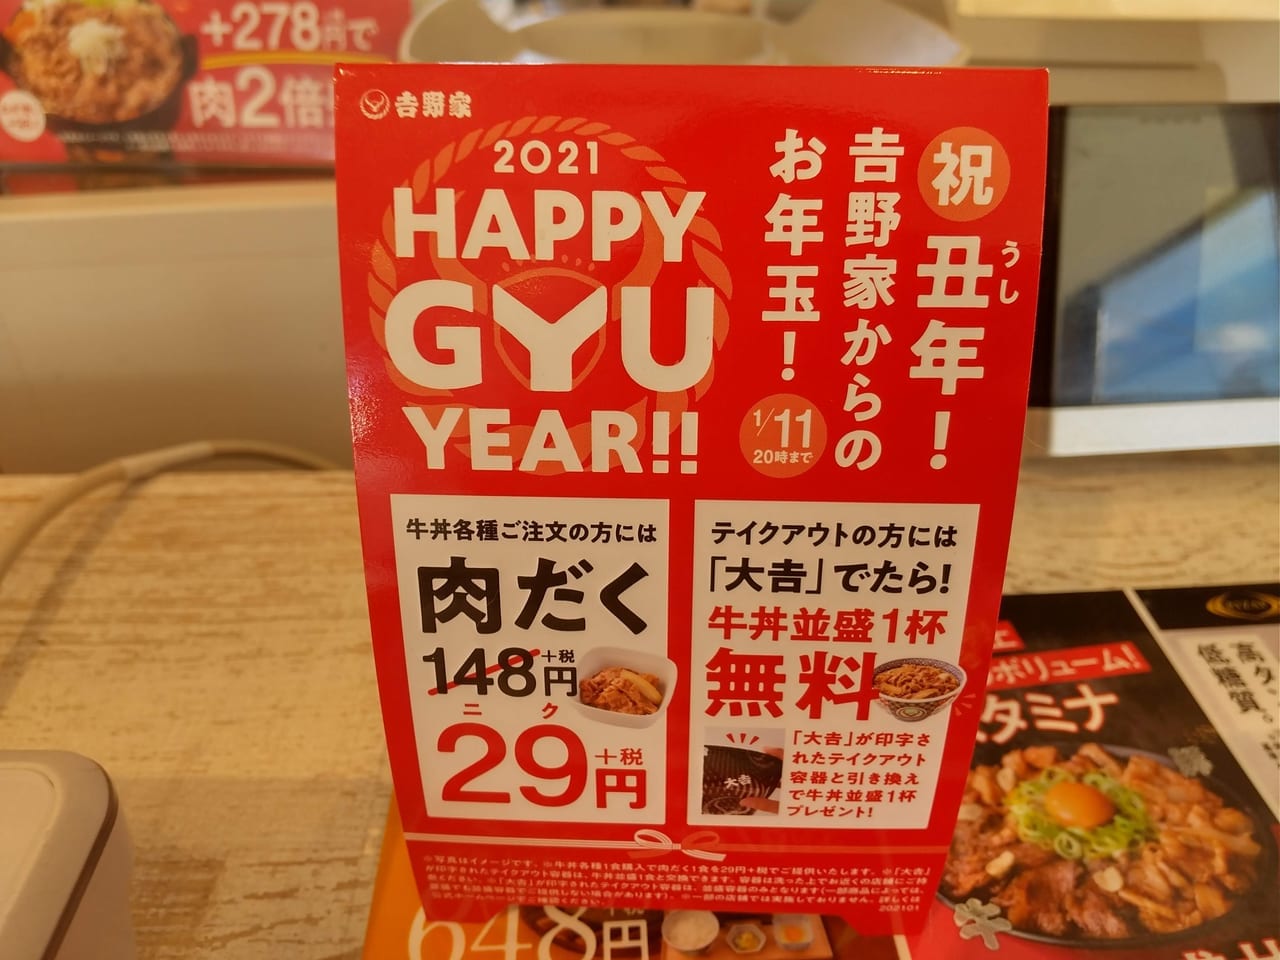 吉野家の2021HAPPY GYU YEAR!!キャンペーン